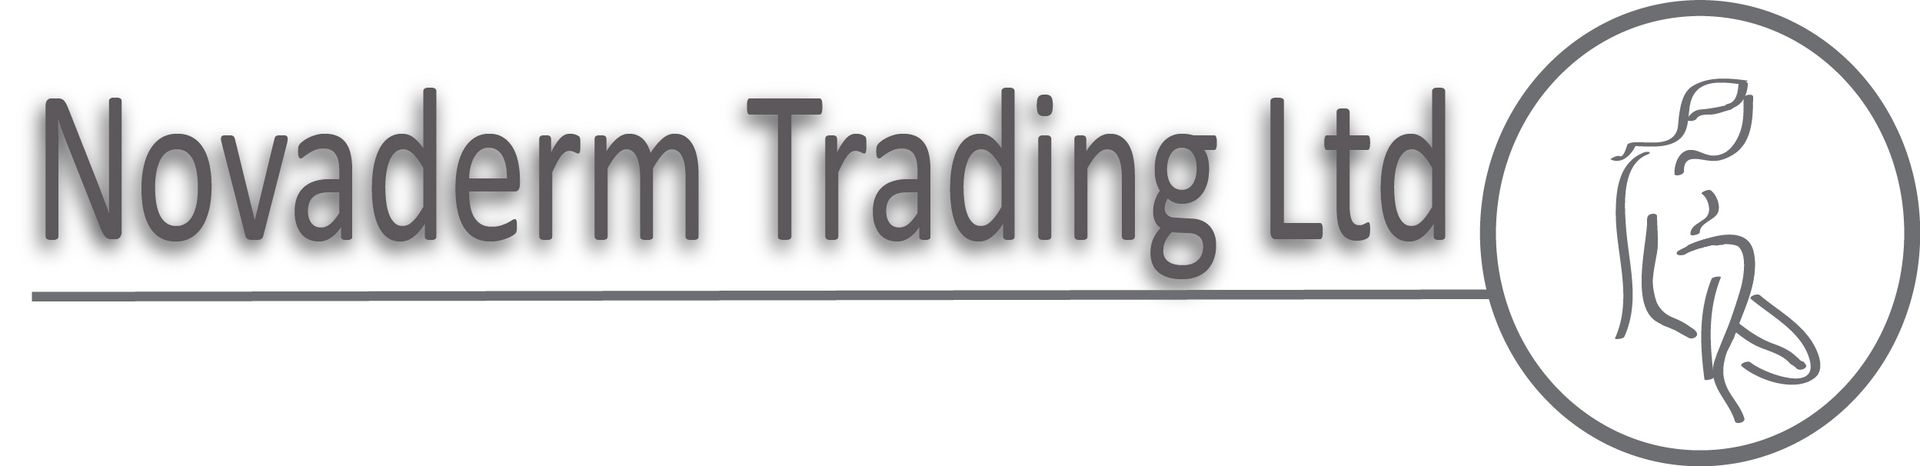 Novaderm Trading Ltd logo